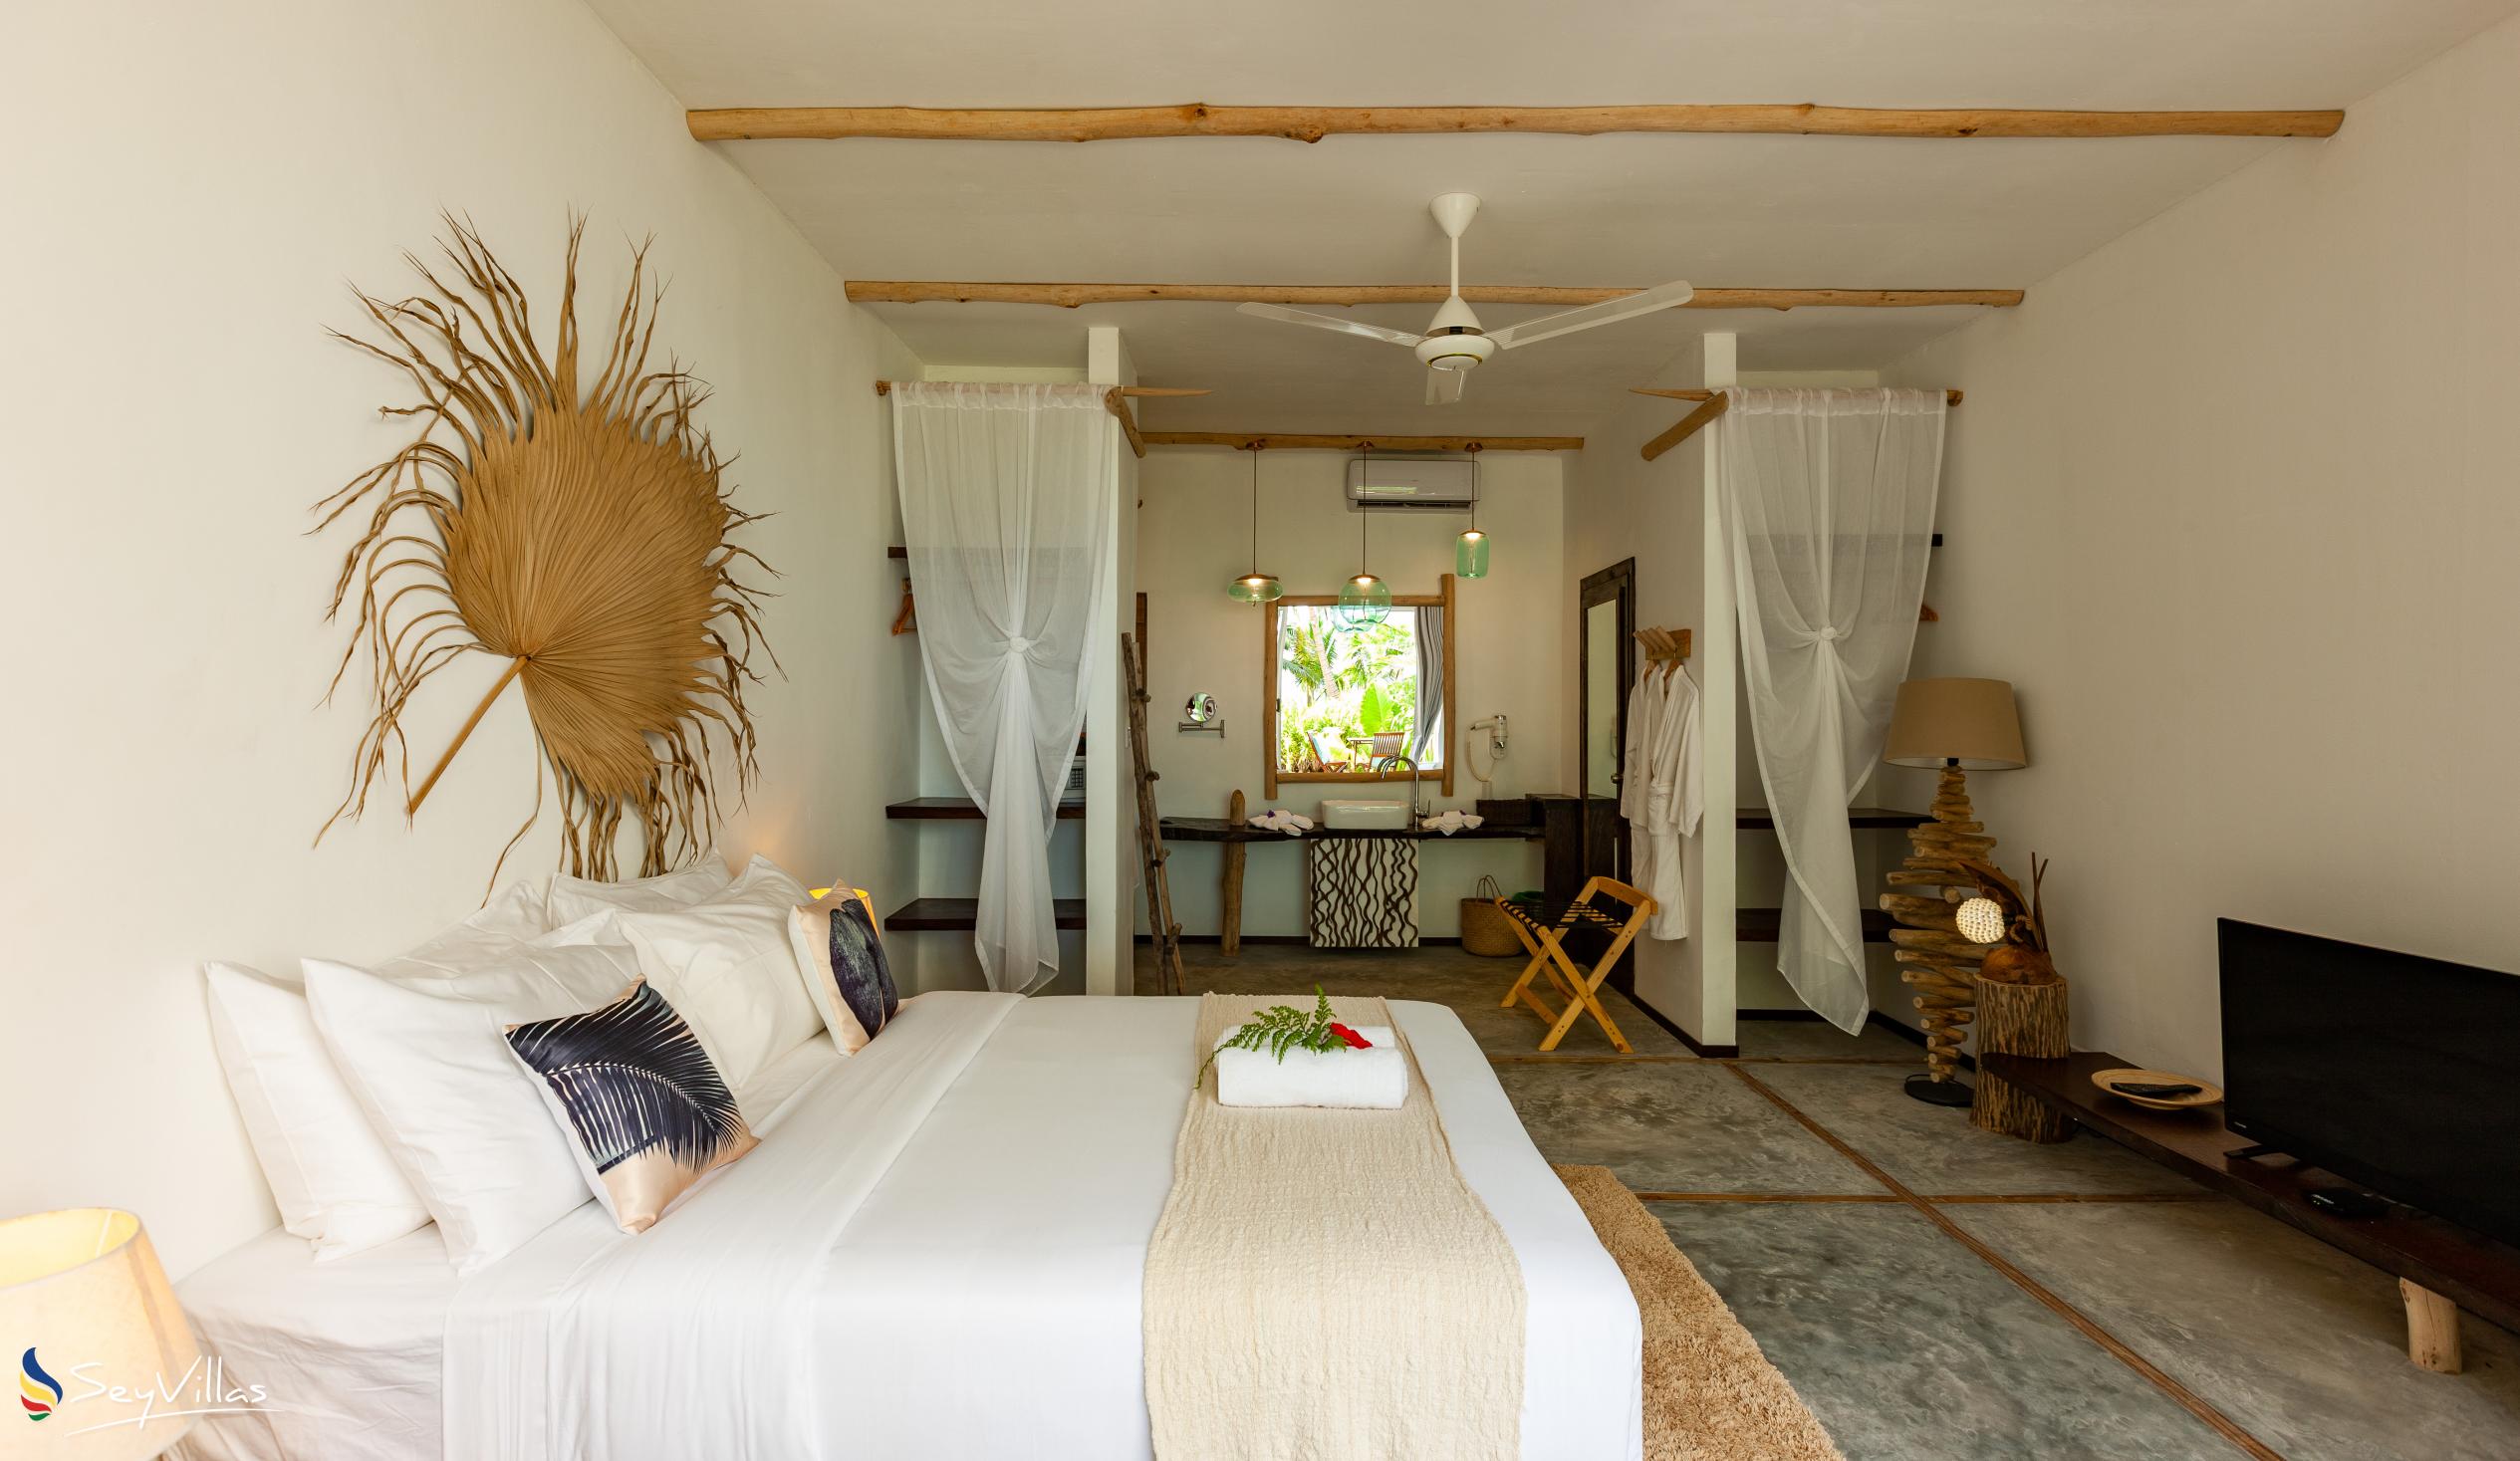 Foto 124: Bliss Hotel Praslin - Beach House - Chambre Beach Supérieure - Praslin (Seychelles)